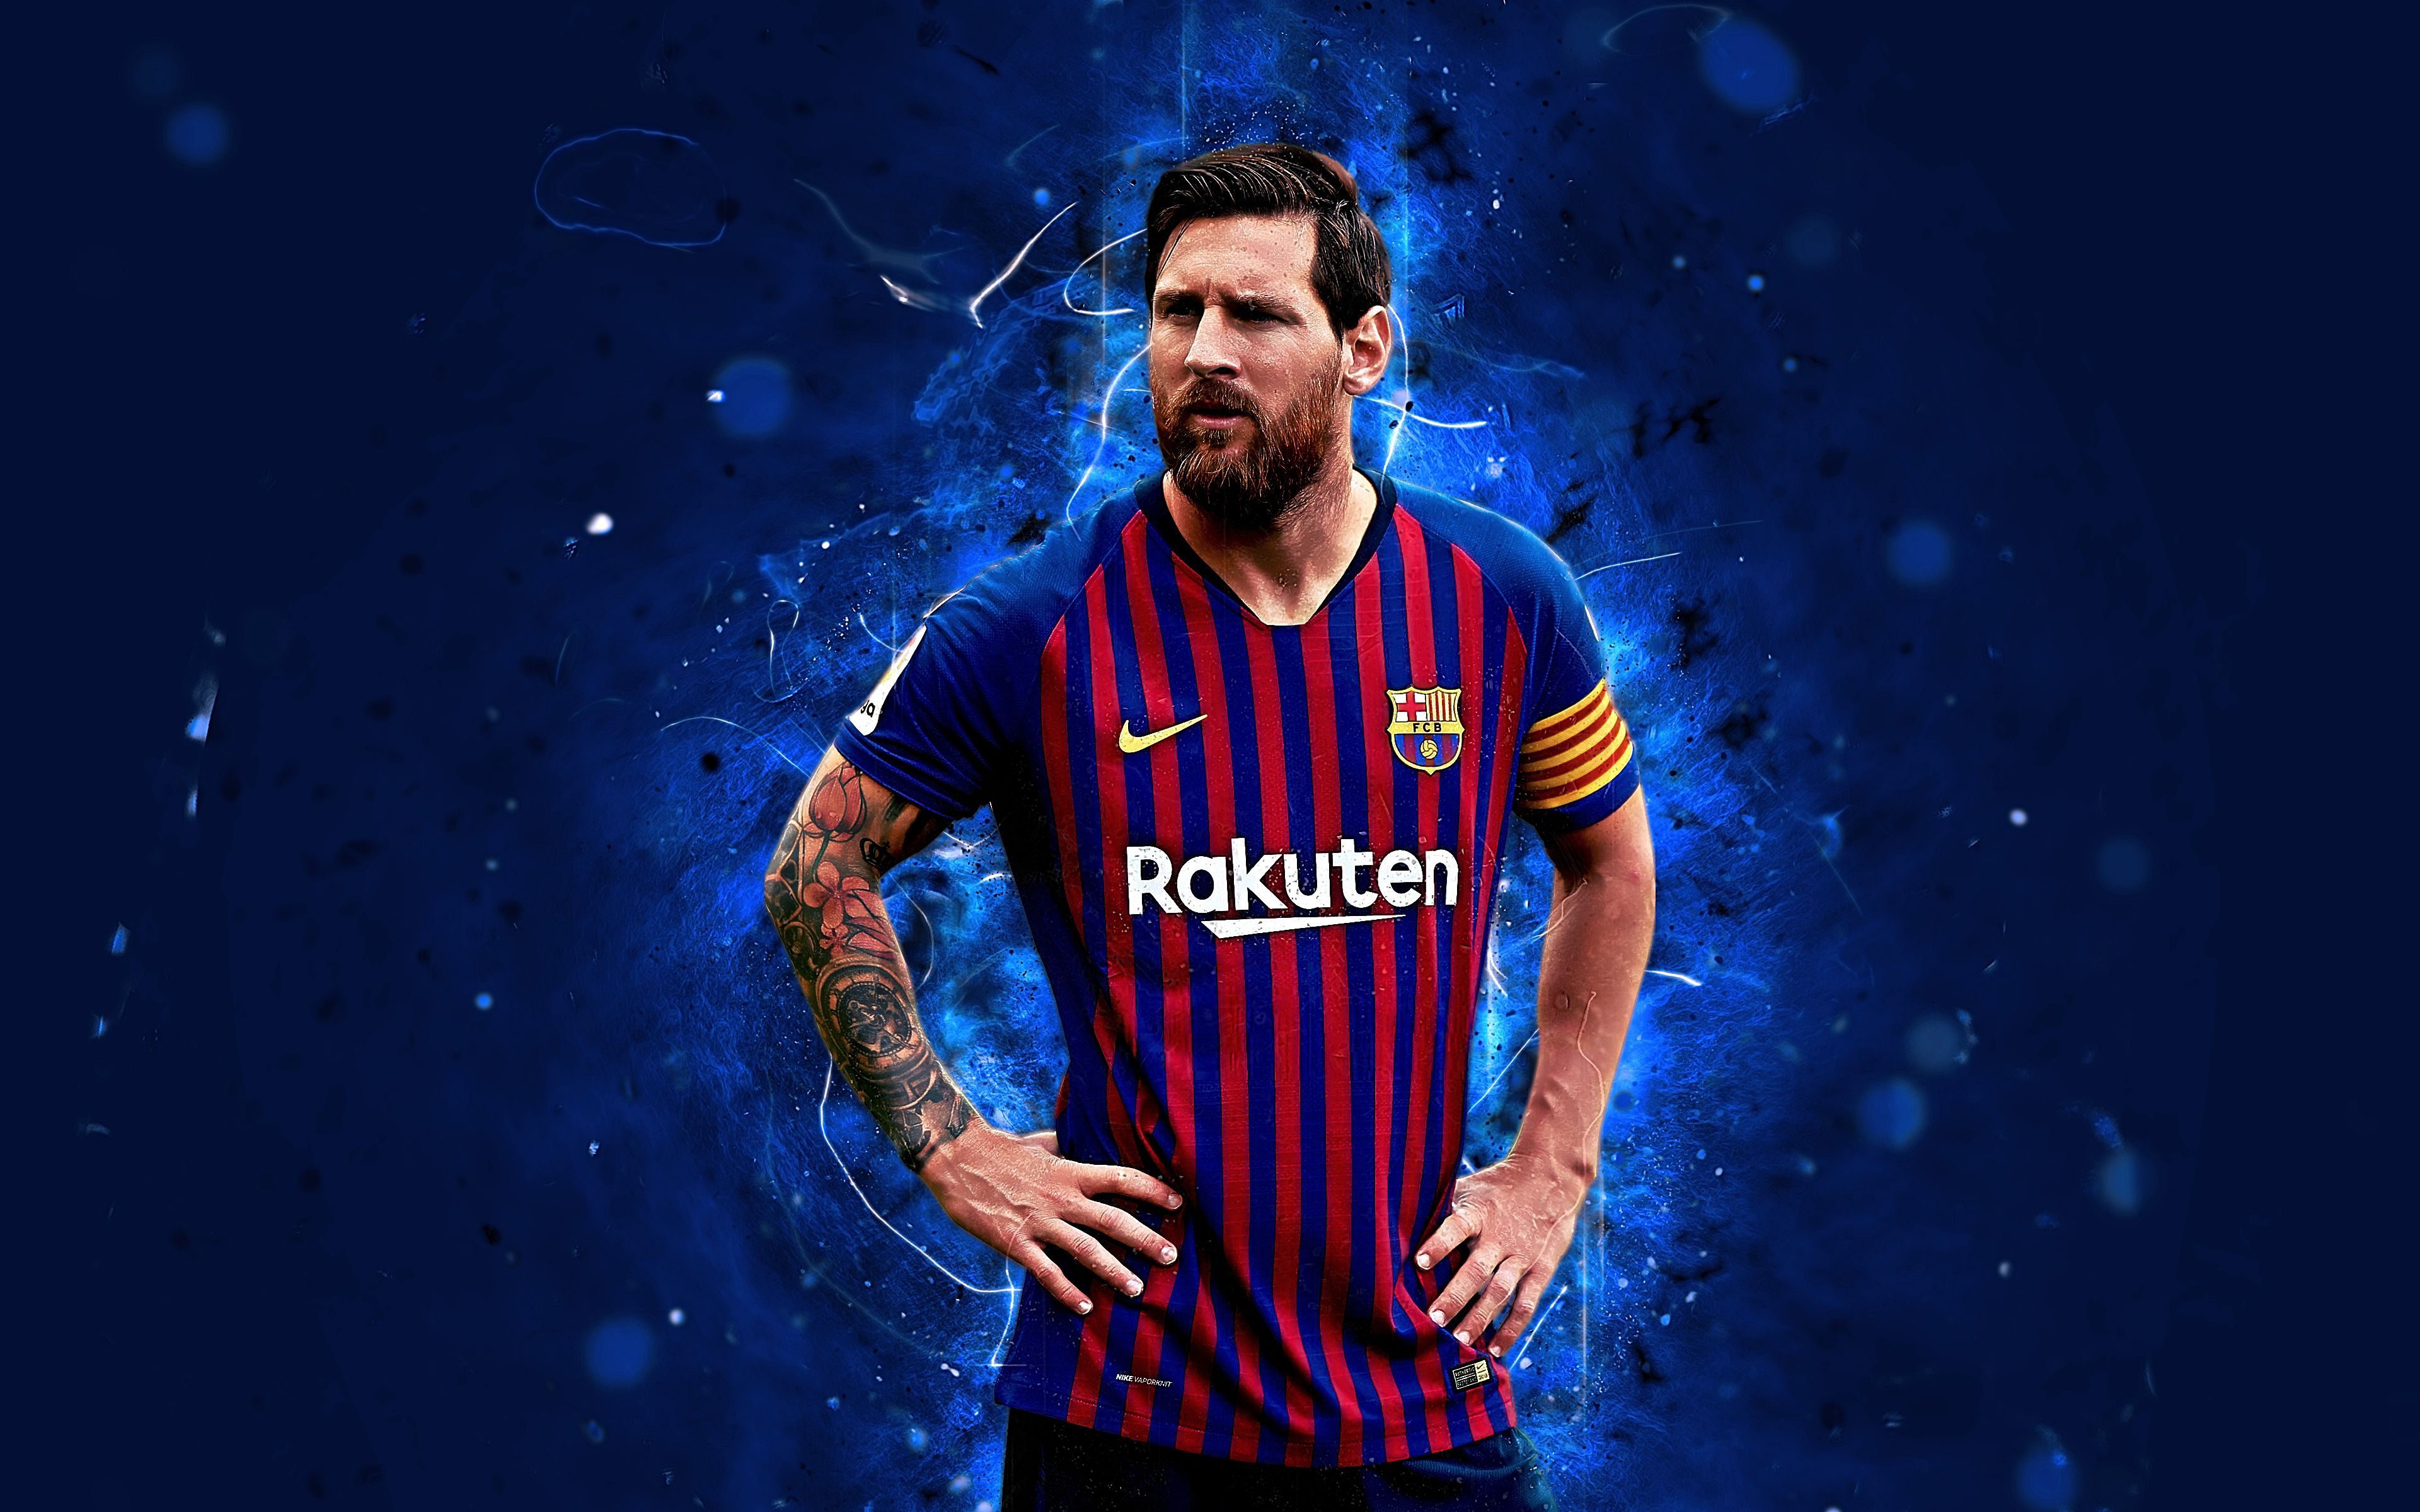 Tận hưởng sự tuyệt vời của hình nền Messi 4K với chất lượng hình ảnh siêu nét. Hình ảnh này sẽ mang đến cho bạn cảm giác như đang đứng ở sân Camp Nou và chiêm ngưỡng Messi chơi bóng trước mắt bạn. Đừng bỏ lỡ kỳ quan này và tải ngay bức ảnh nền Messi 4K để cảm nhận được sự khác biệt!